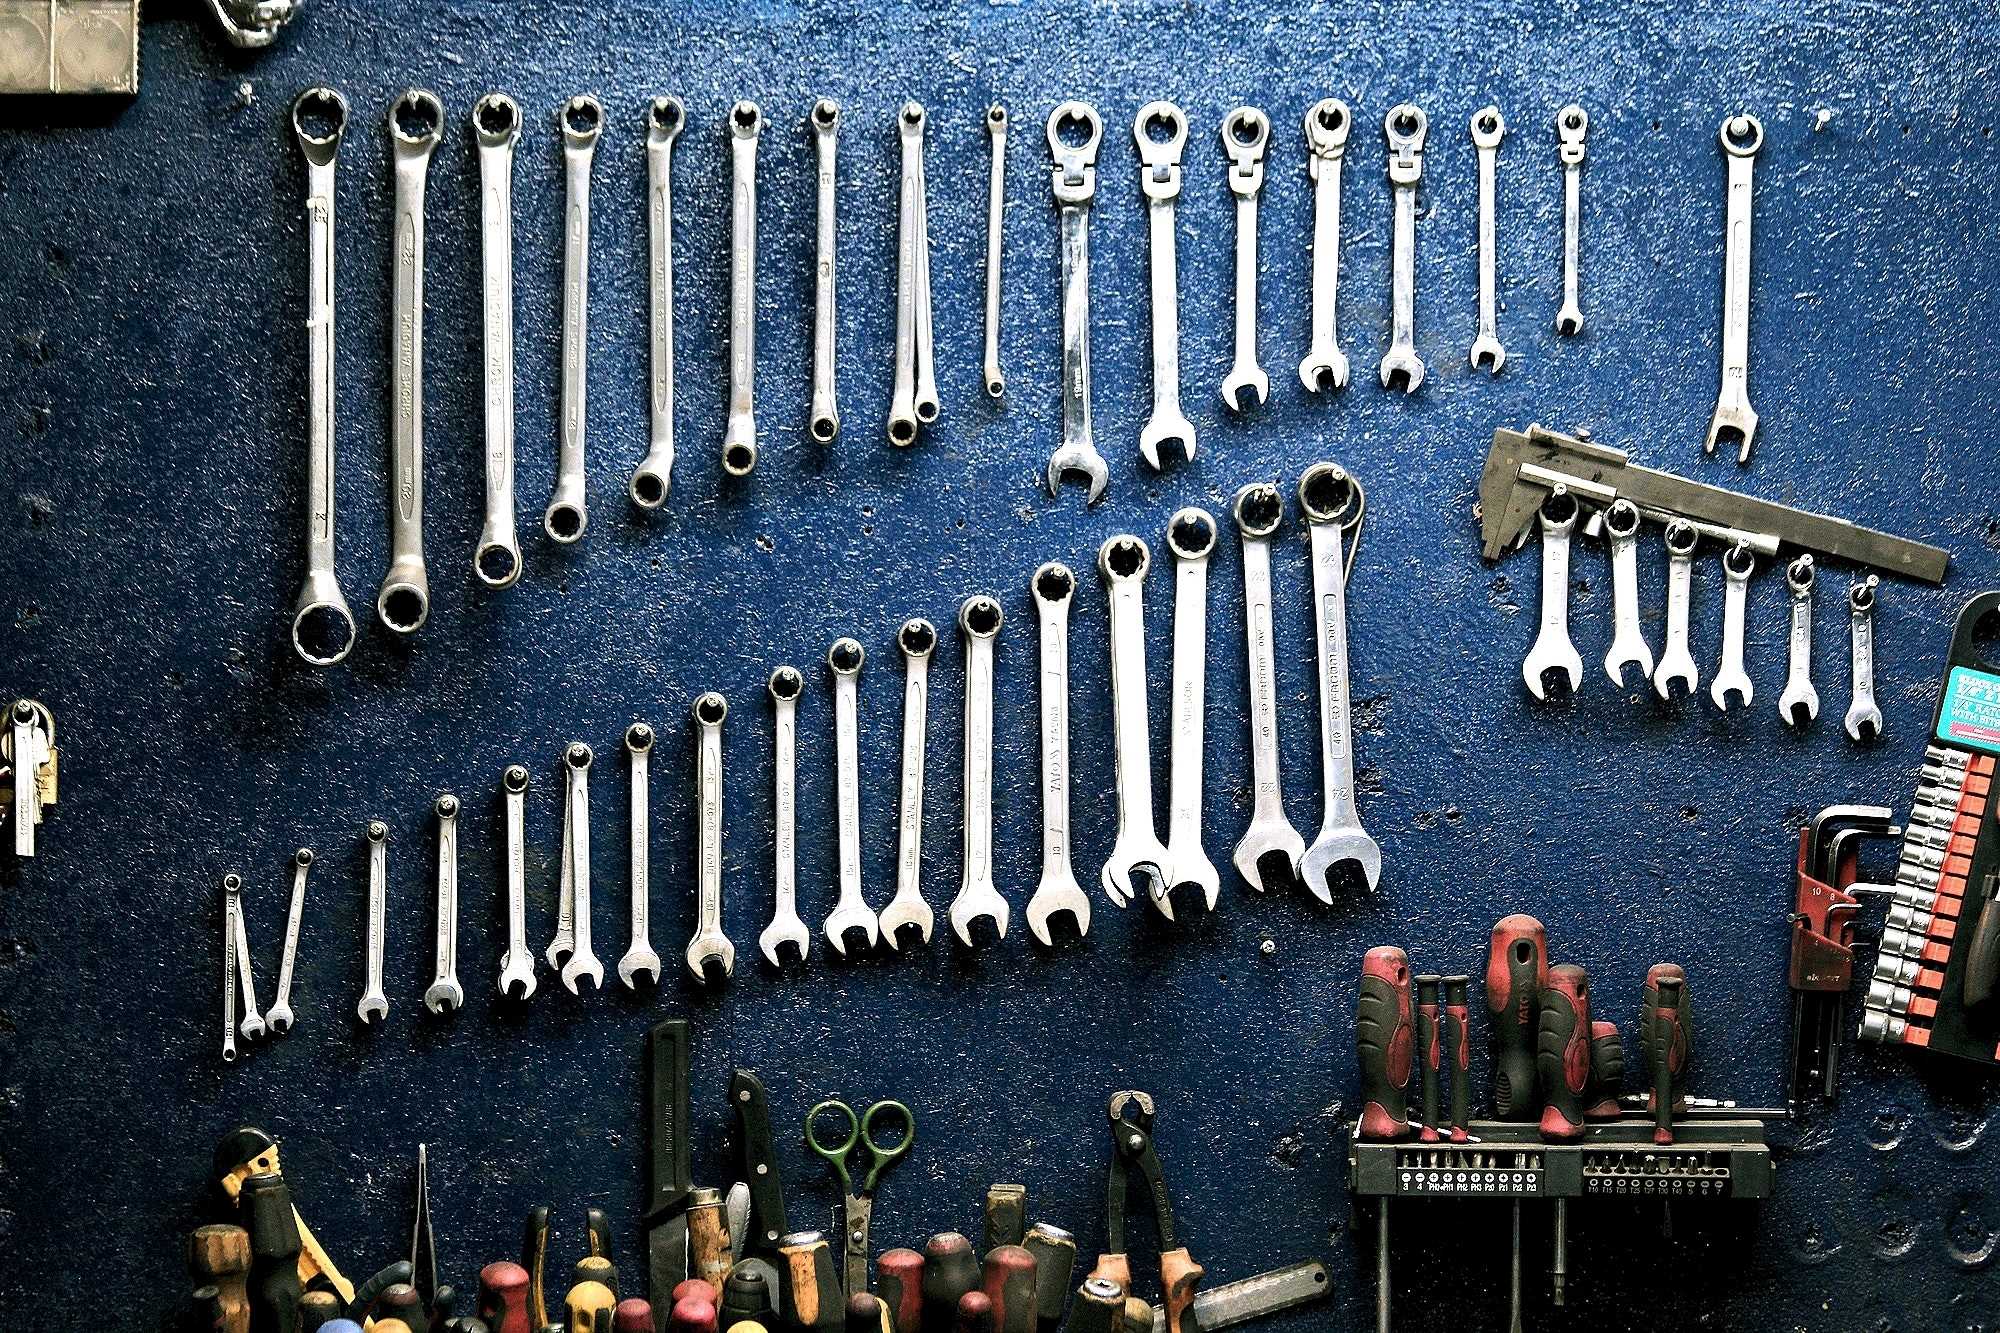 La imagen muestra un conjunto de herramientas perfectamente colocadas.